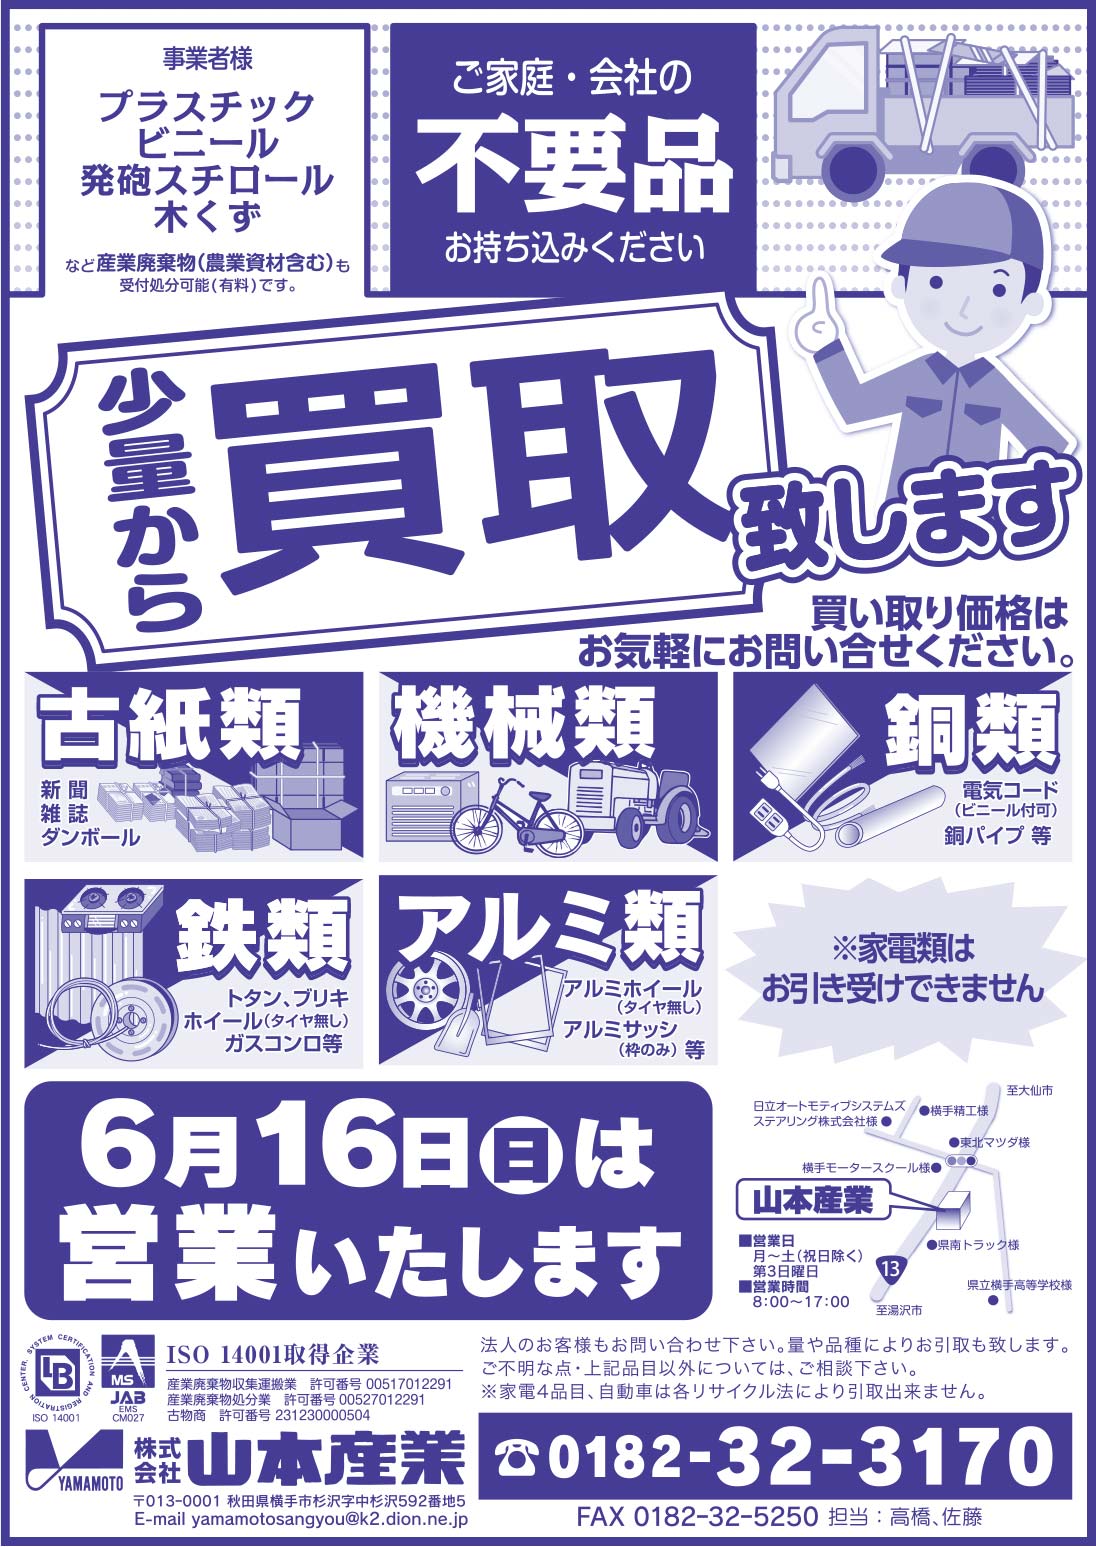 株式会社 山本産業様の2019.06.14号広告